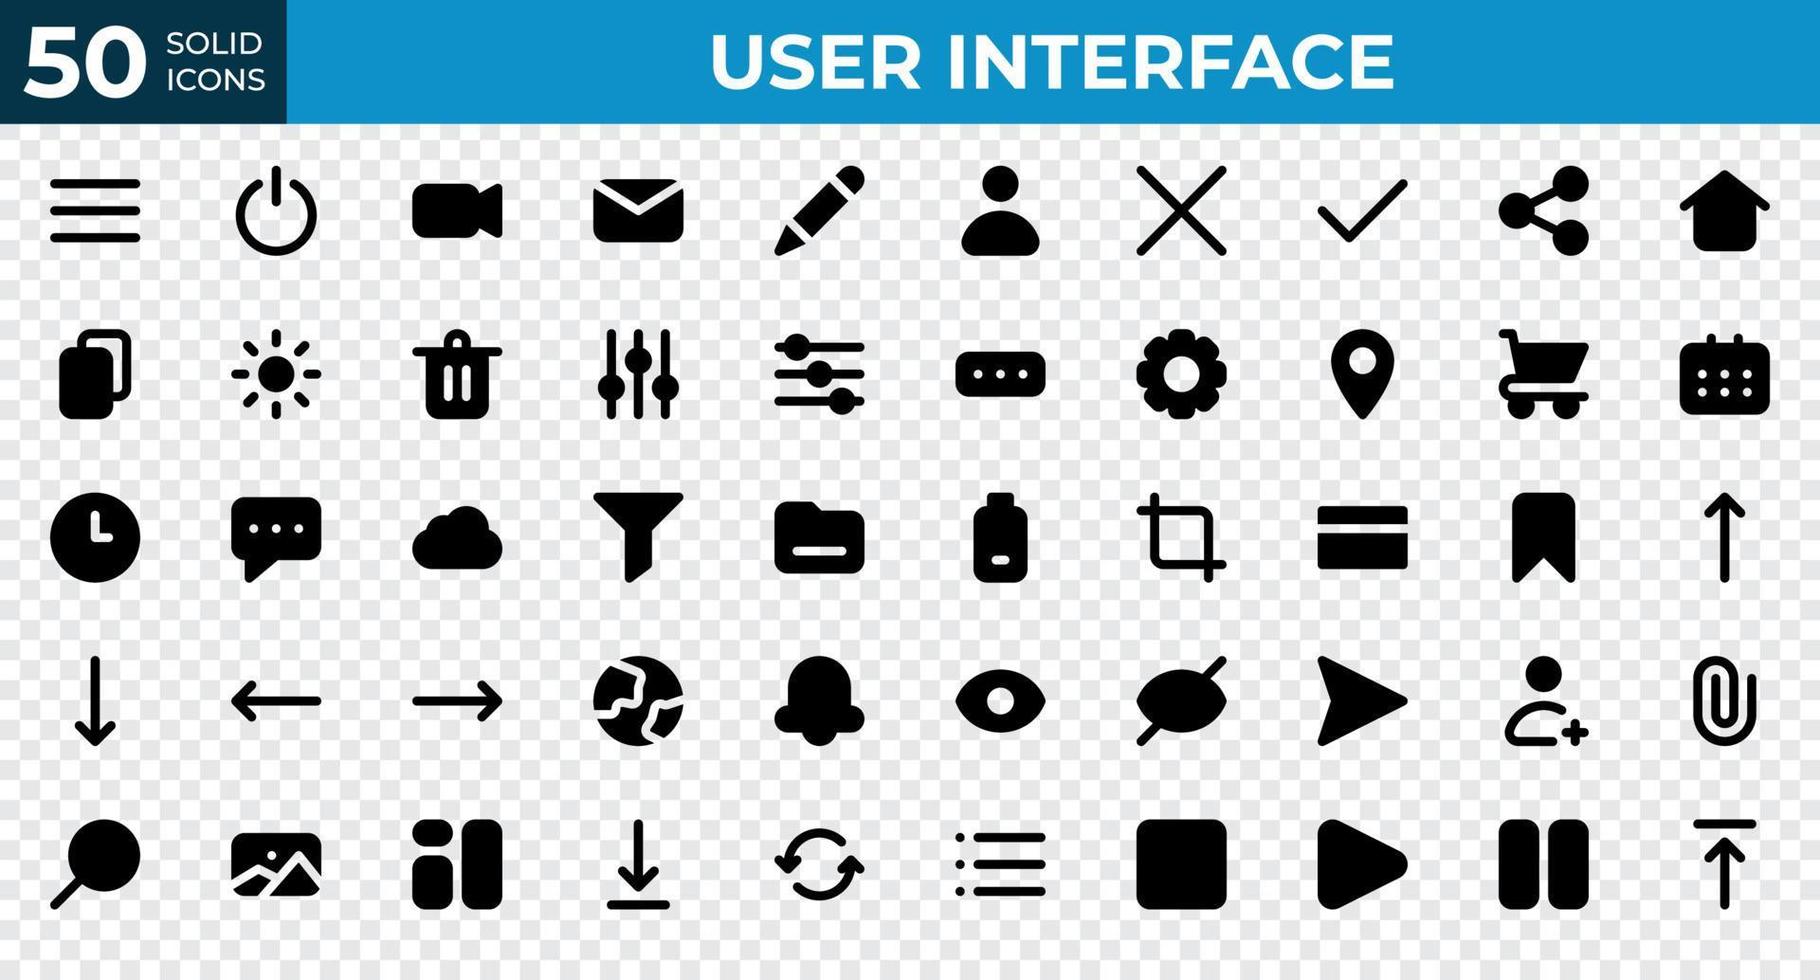 conjunto de 50 iconos de interfaz de usuario en estilo sólido. menú, calendario, reloj. colección de iconos sólidos. ilustración vectorial vector